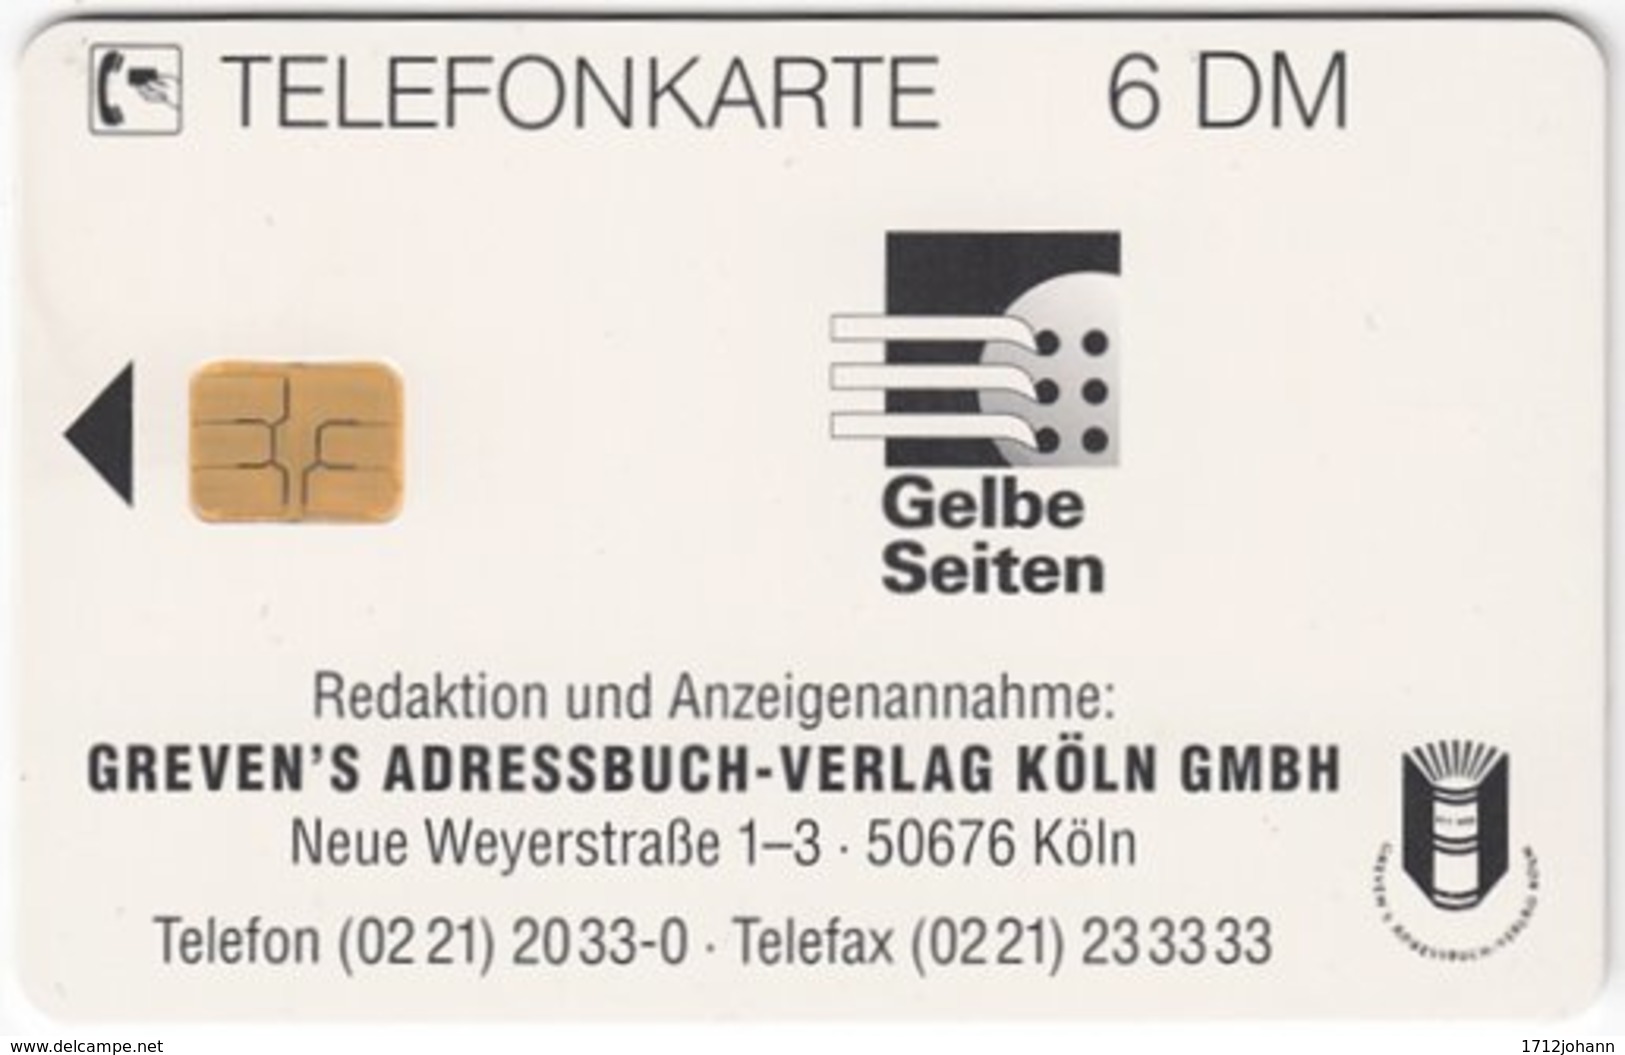 GERMANY O-Serie B-249 - 1330 07.94 - Religion, Church, Leisure, Ballooning - MINT - O-Series: Kundenserie Vom Sammlerservice Ausgeschlossen